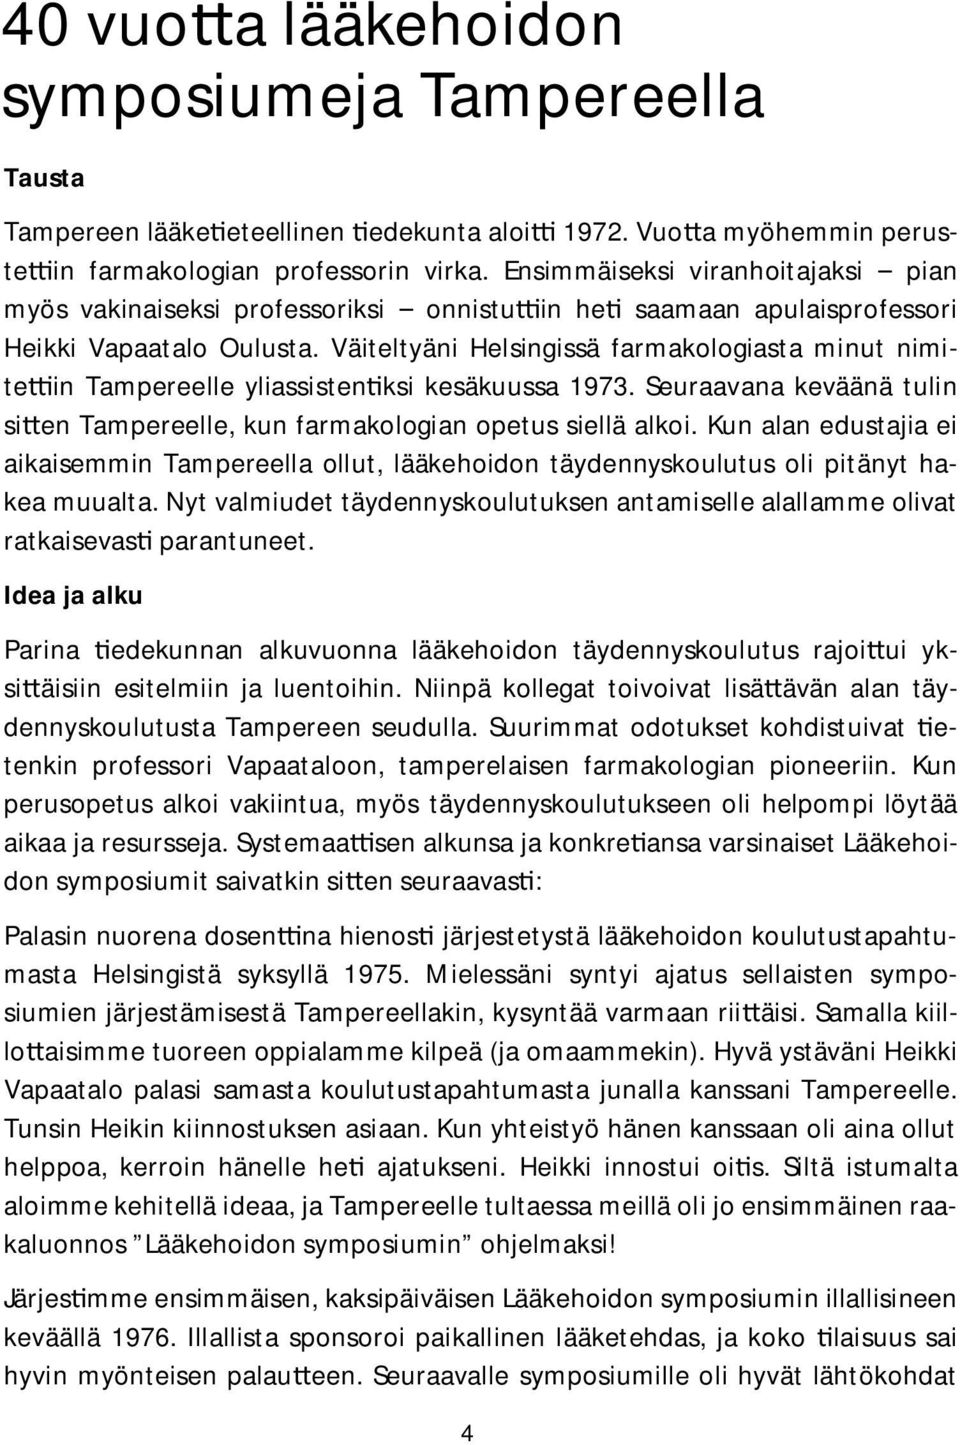 Väiteltyäni Helsingissä farmakologiasta minut nimite in Tampereelle yliassisten ksi kesäkuussa 1973. Seuraavana keväänä tulin si en Tampereelle, kun farmakologian opetus siellä alkoi.